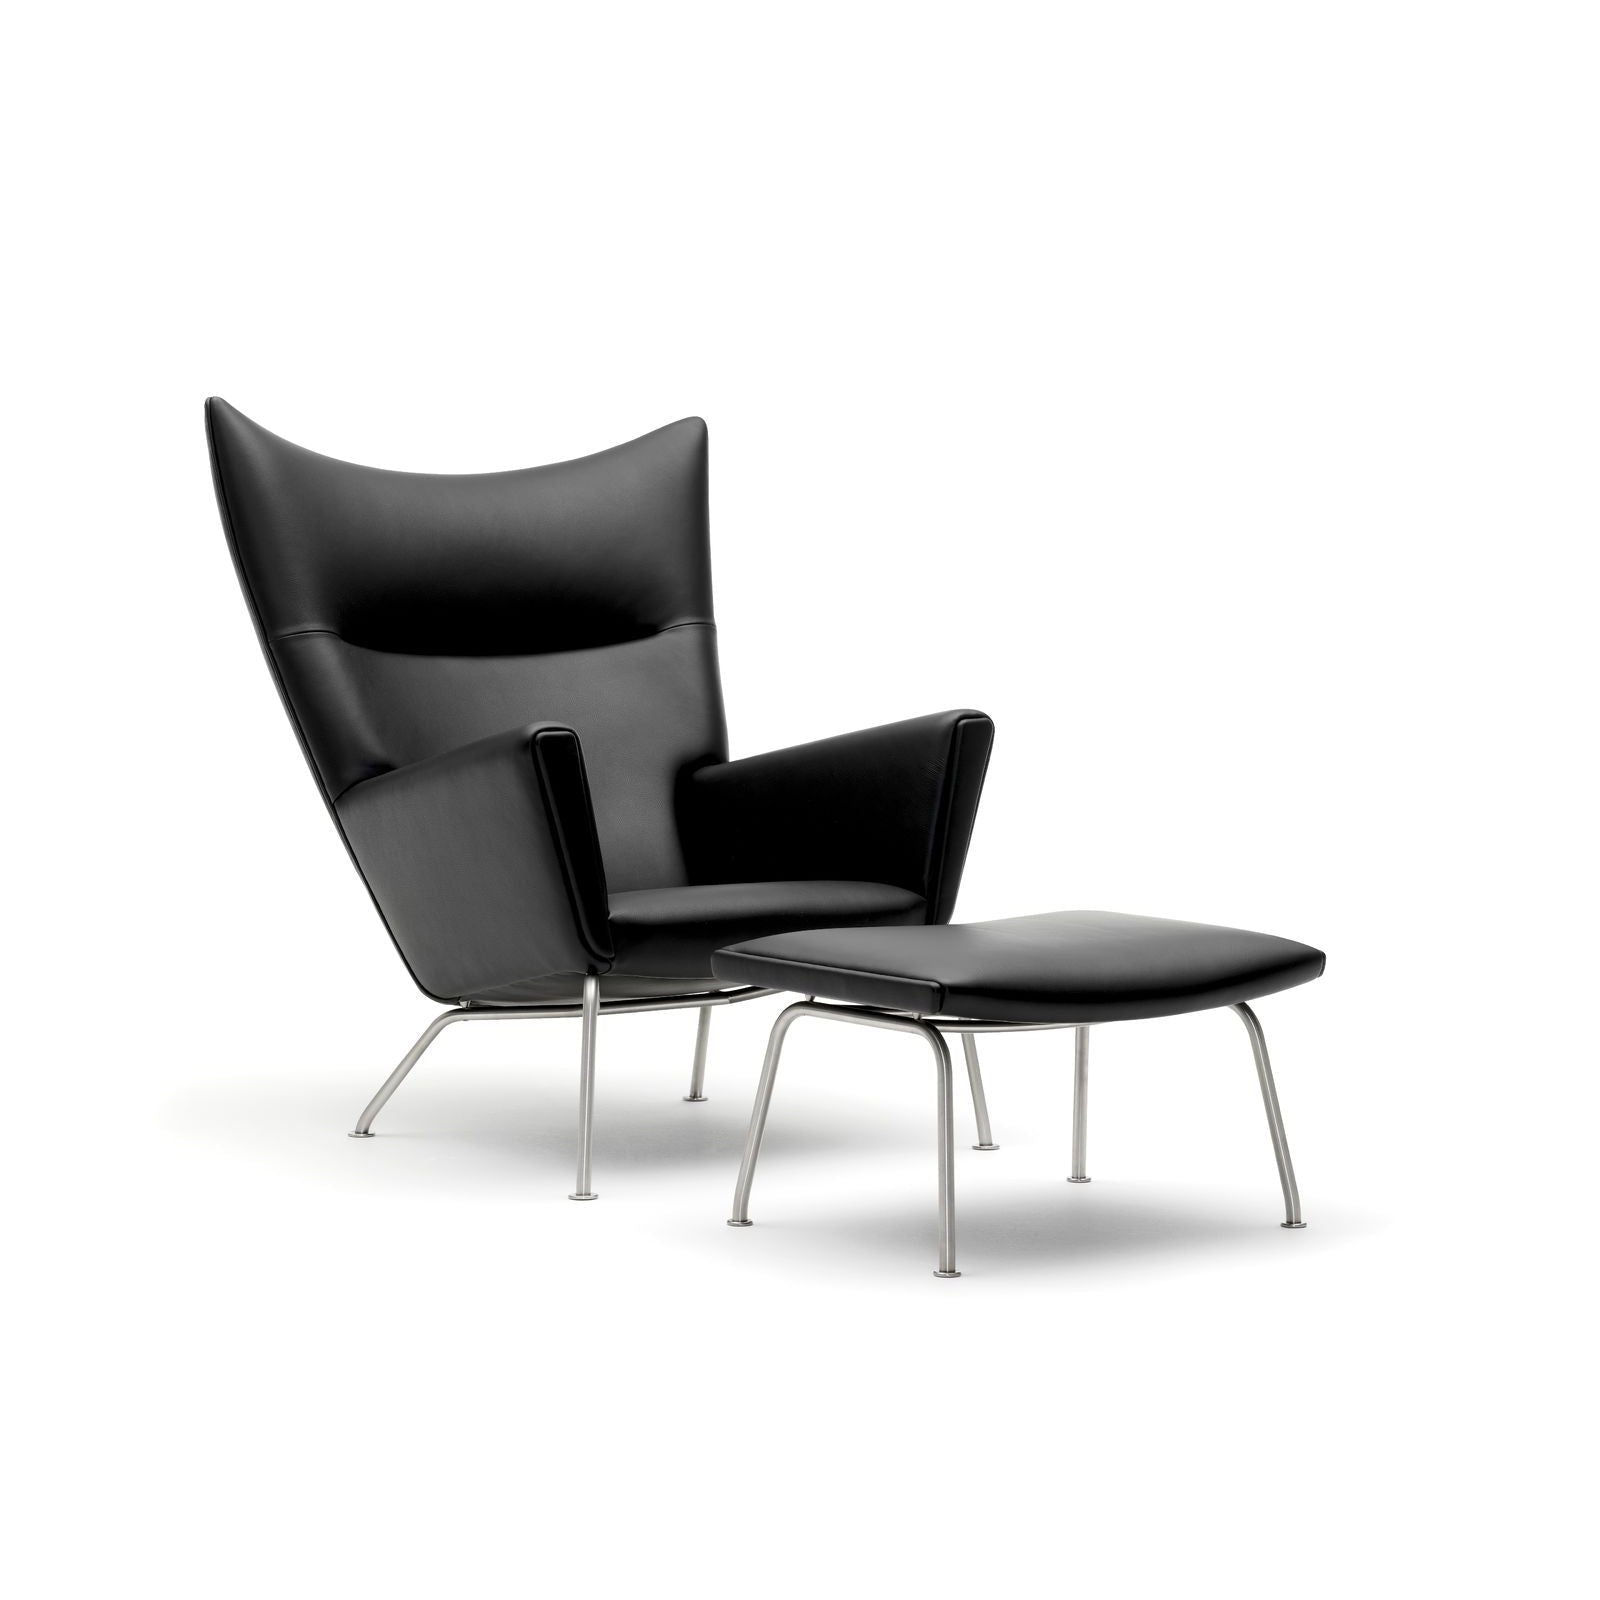 Křídlá židle Carl Hansen CH445, ocel, světle šedá látka